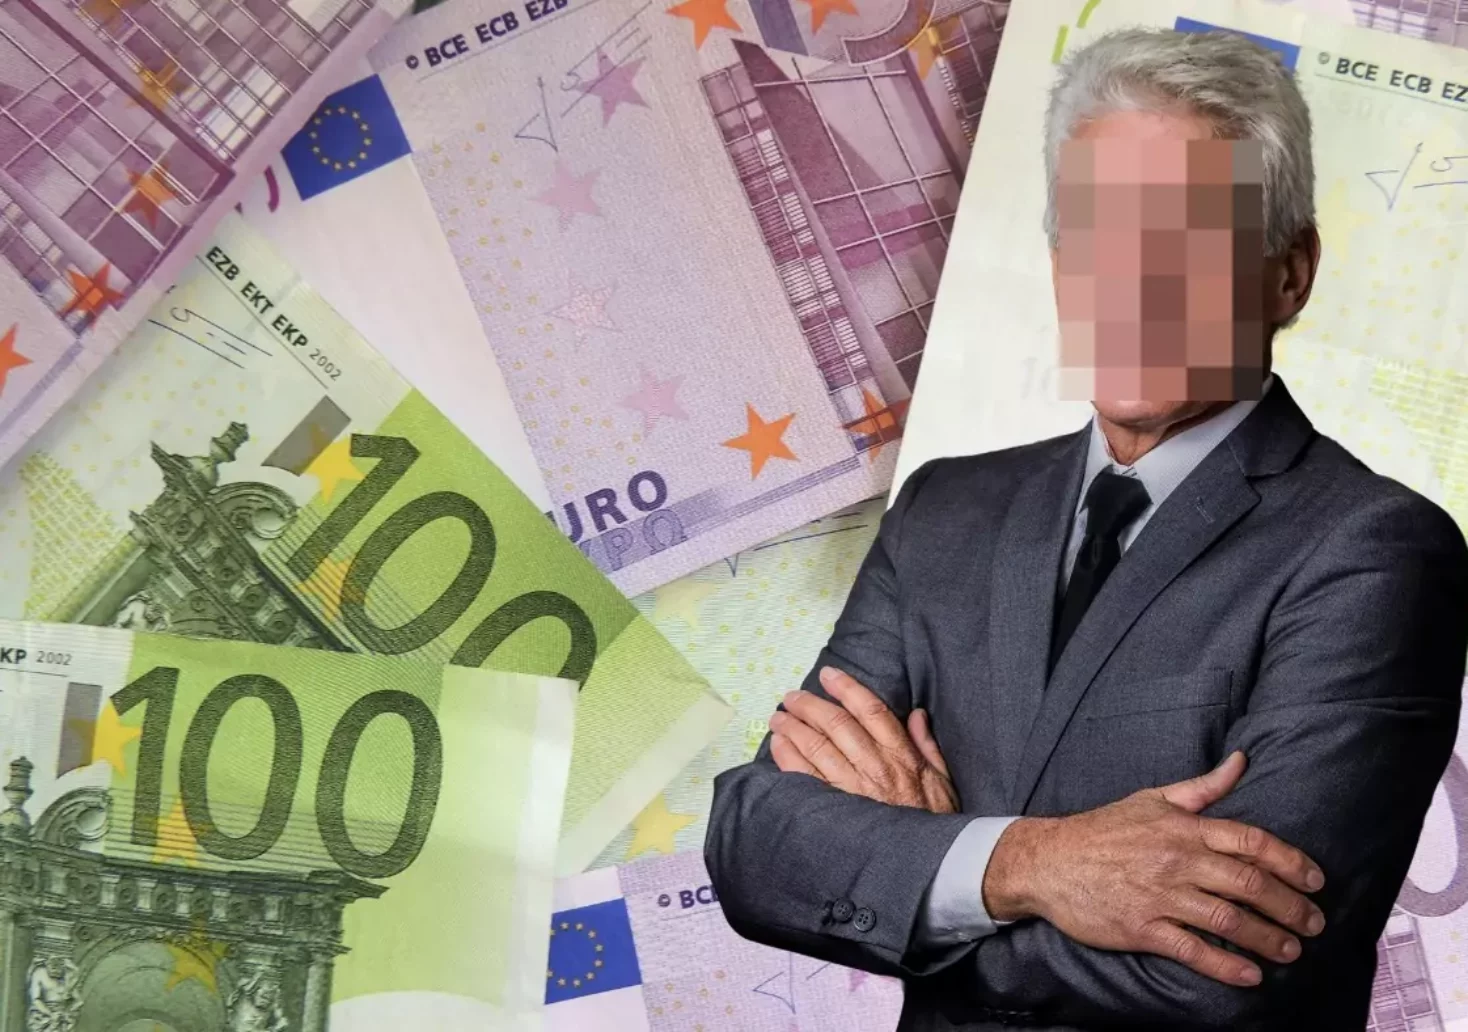 10 Mio. Euro weg: Villacher Banker „wird das Geld sofort besorgen“